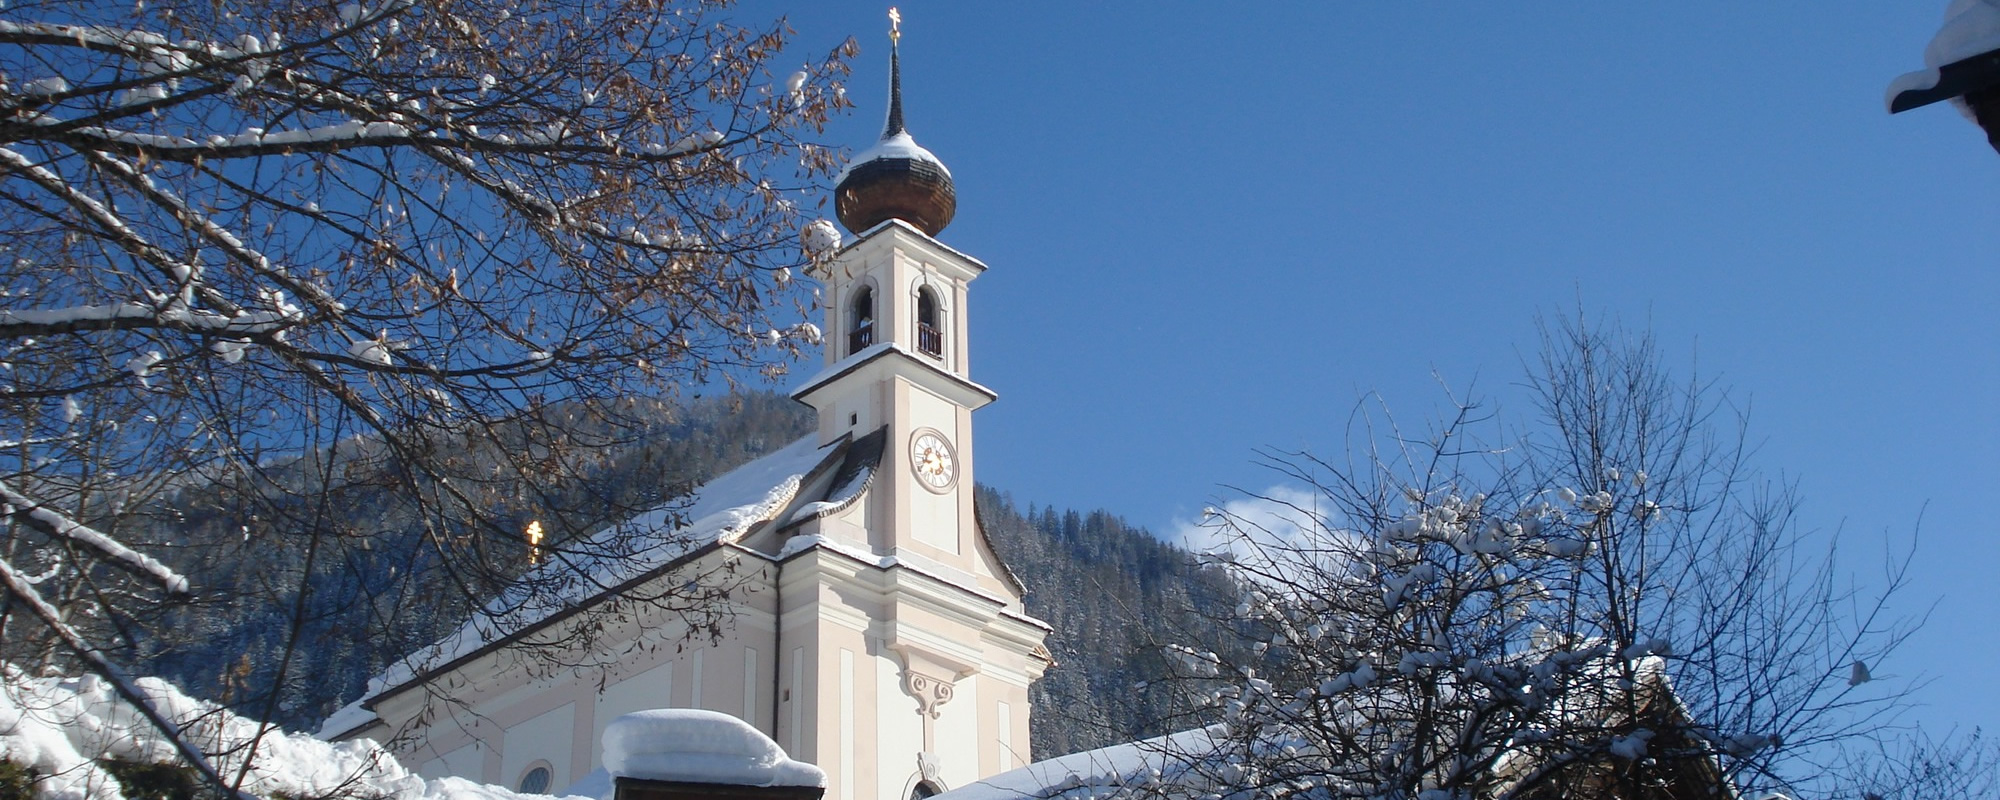 Pfarrkirche Flachau - Aufnahme im Winter